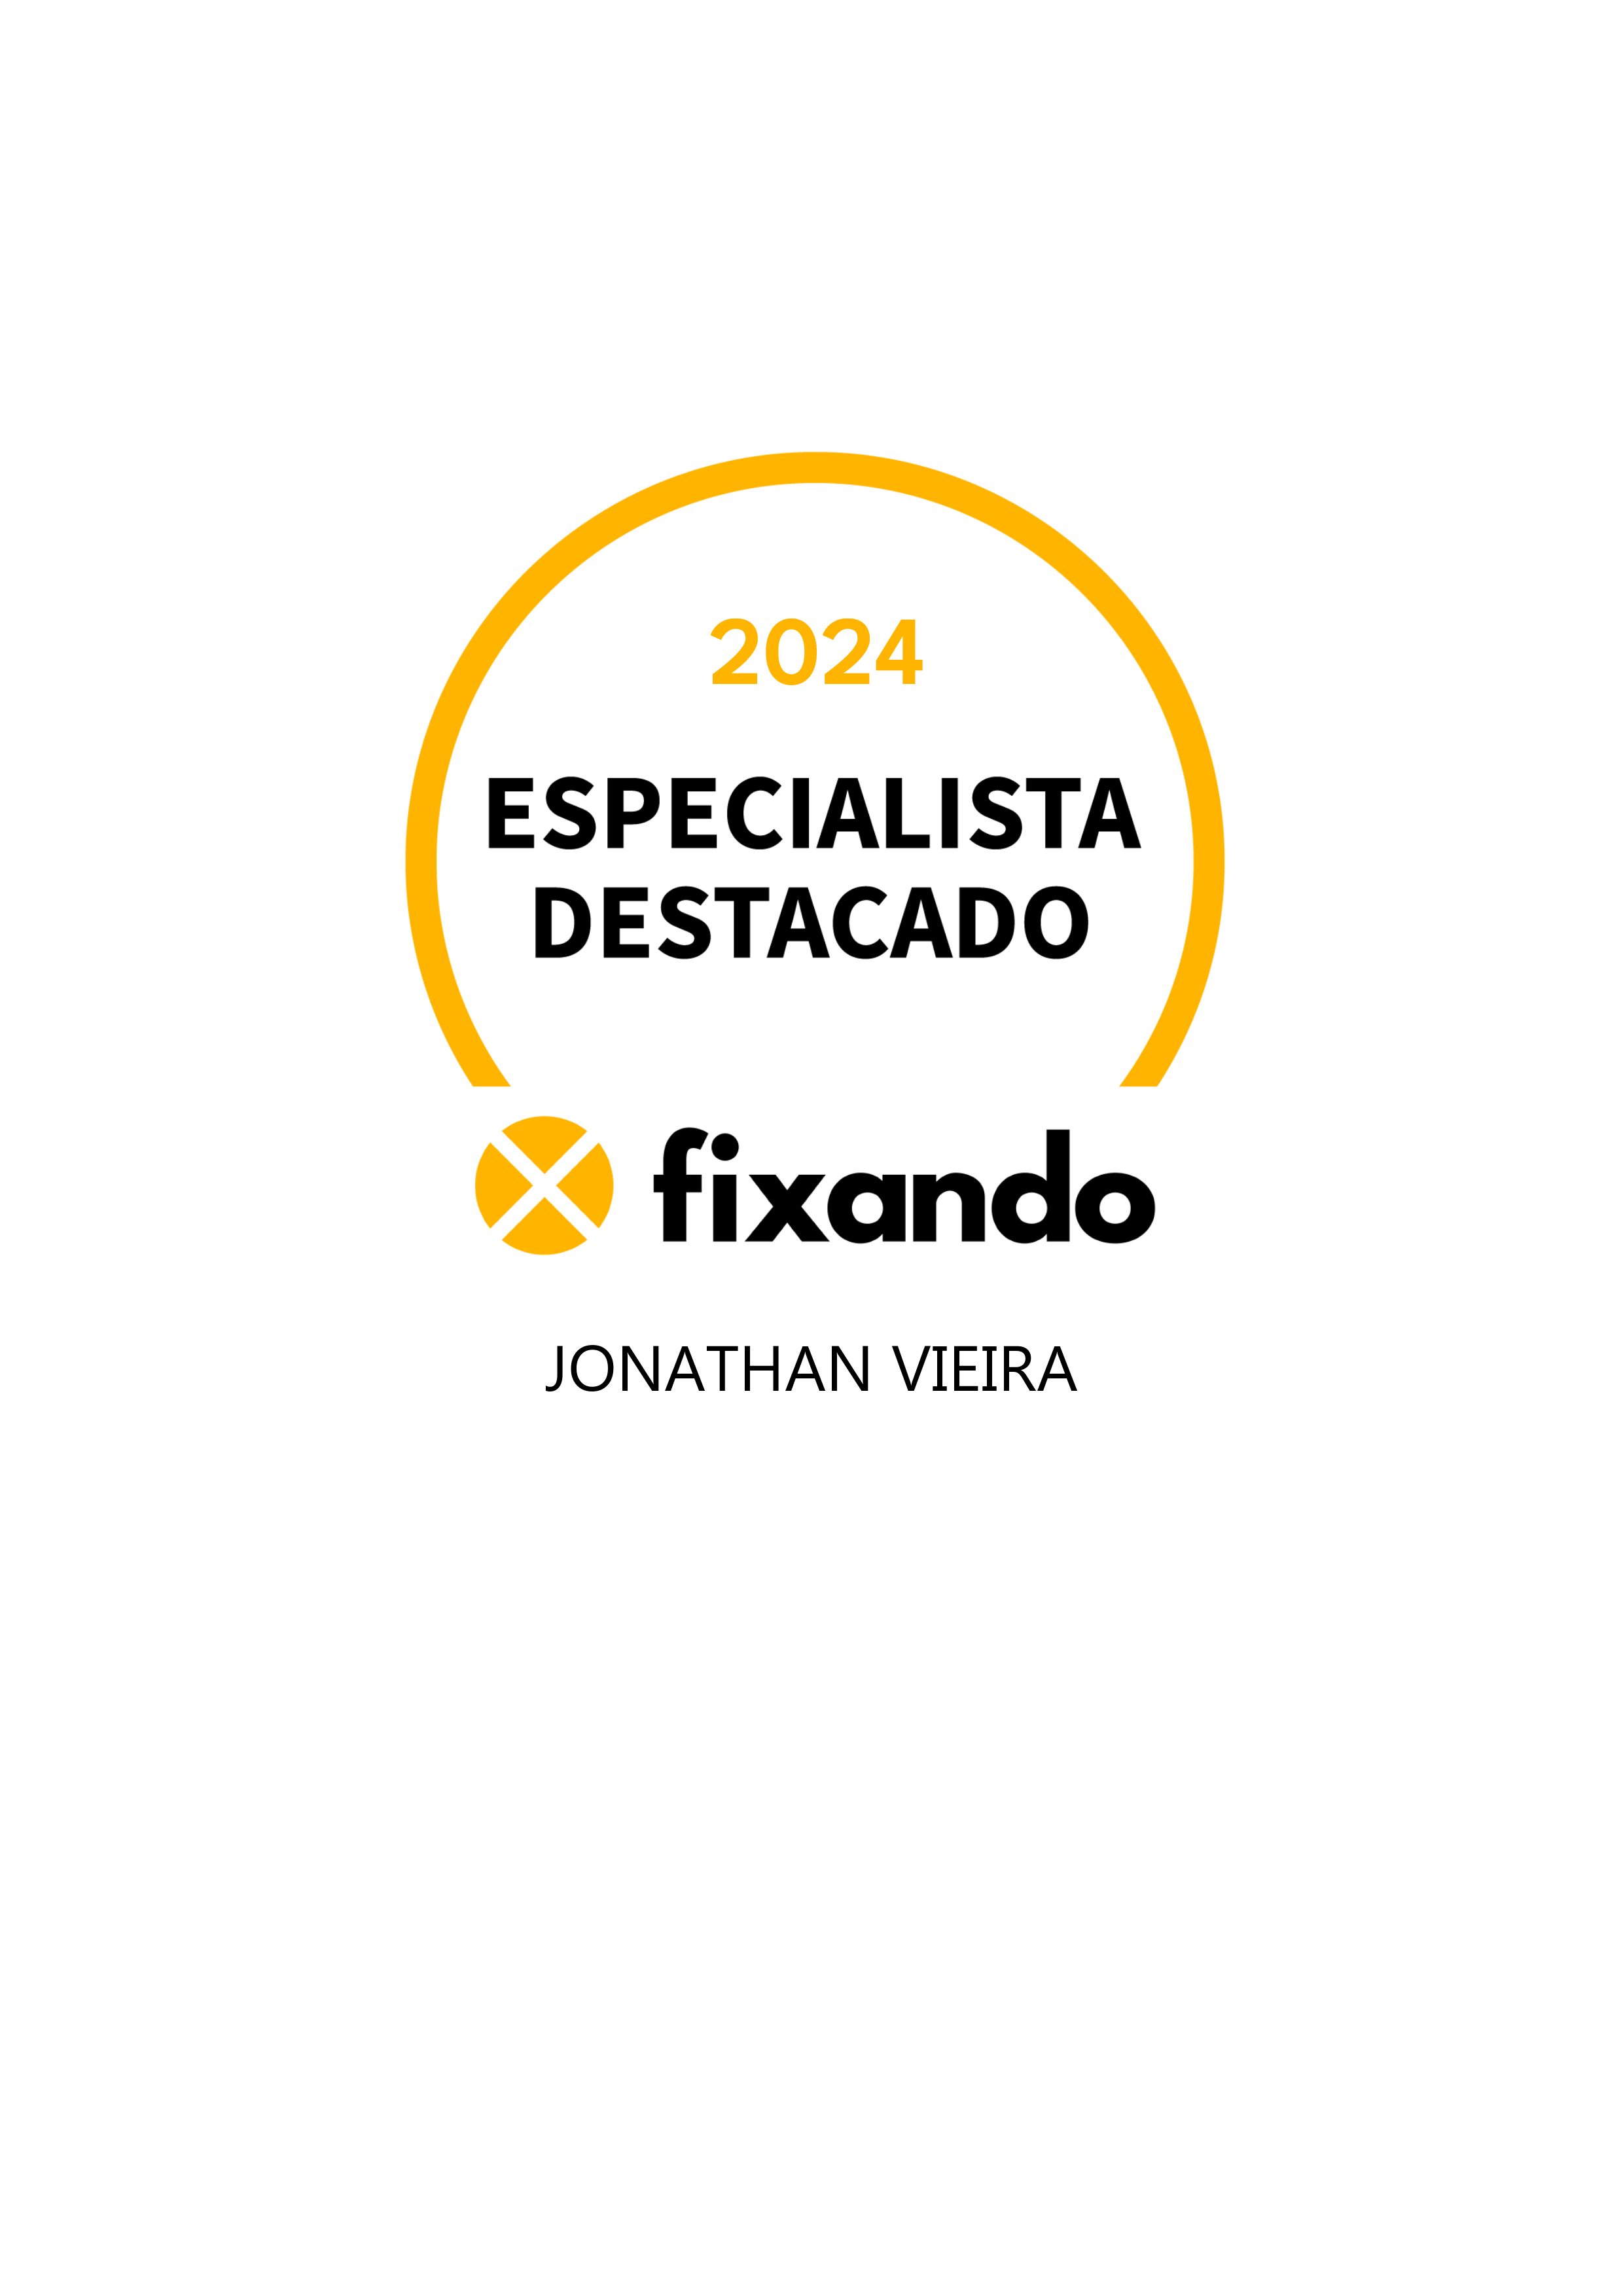 Jonathan vieira - Lisboa - Limpeza a Fundo